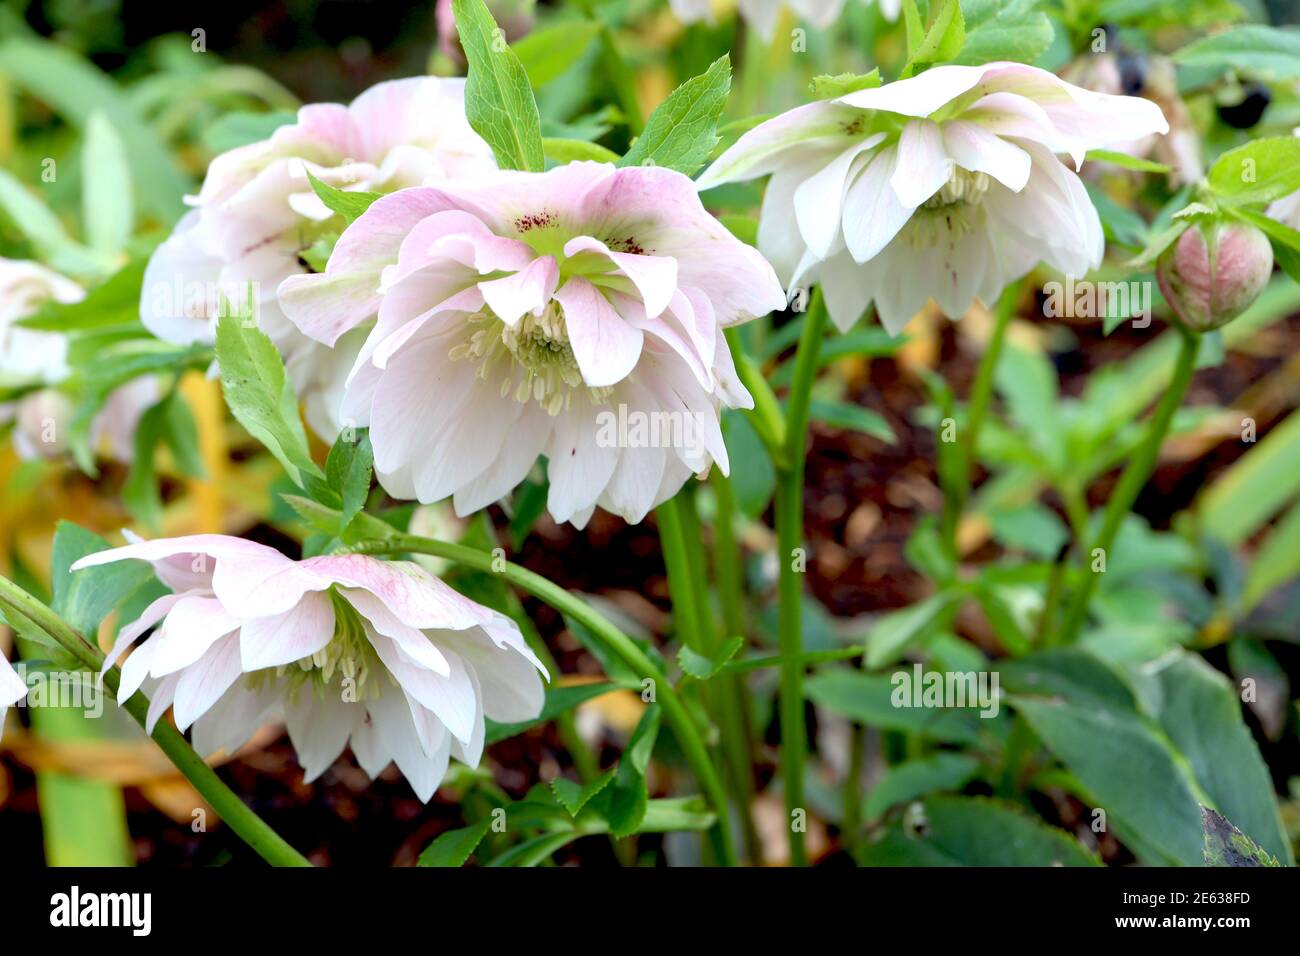 Helleborus x hybridus ‘Double Ellen White’ Double hellébores blancs – hochement de deux fleurs blanches avec des franges roses, janvier, Angleterre, Royaume-Uni Banque D'Images